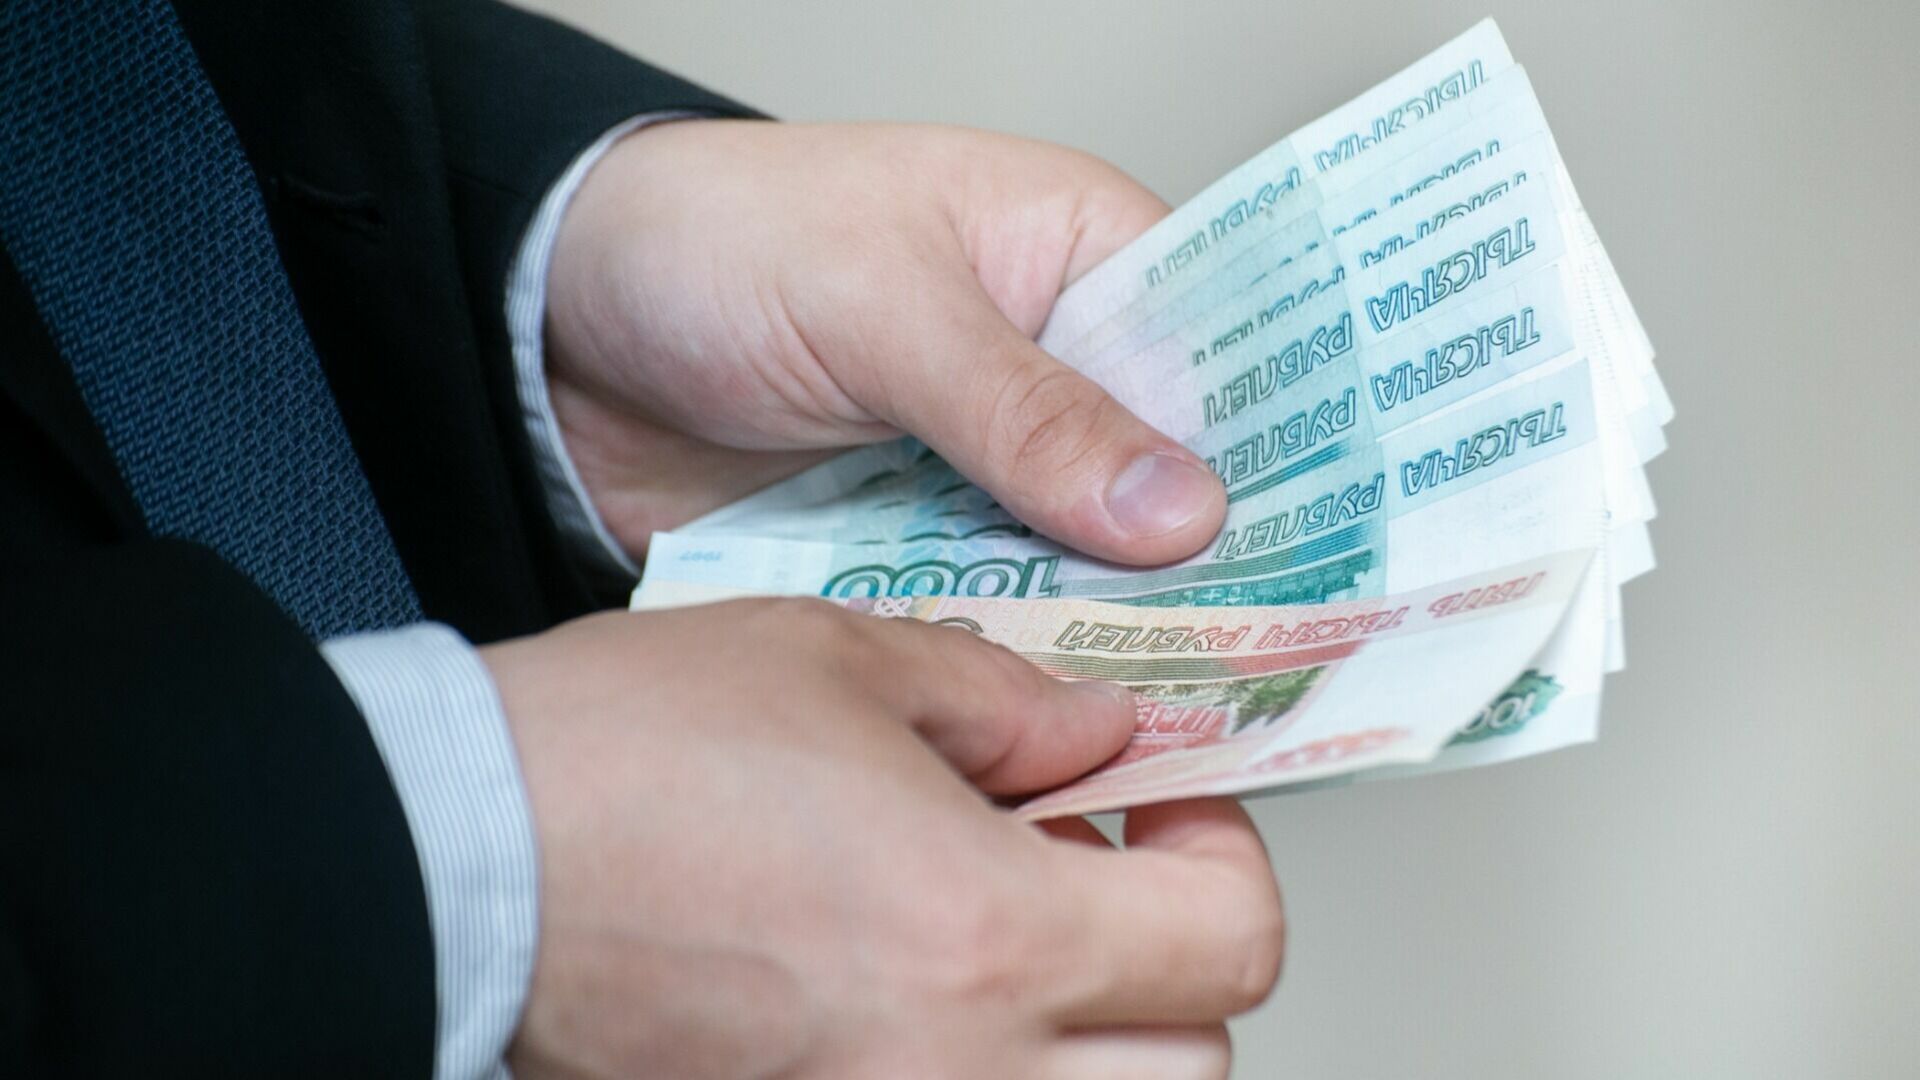 Двух чиновников наказали за недостоверные декларации в Волгограде